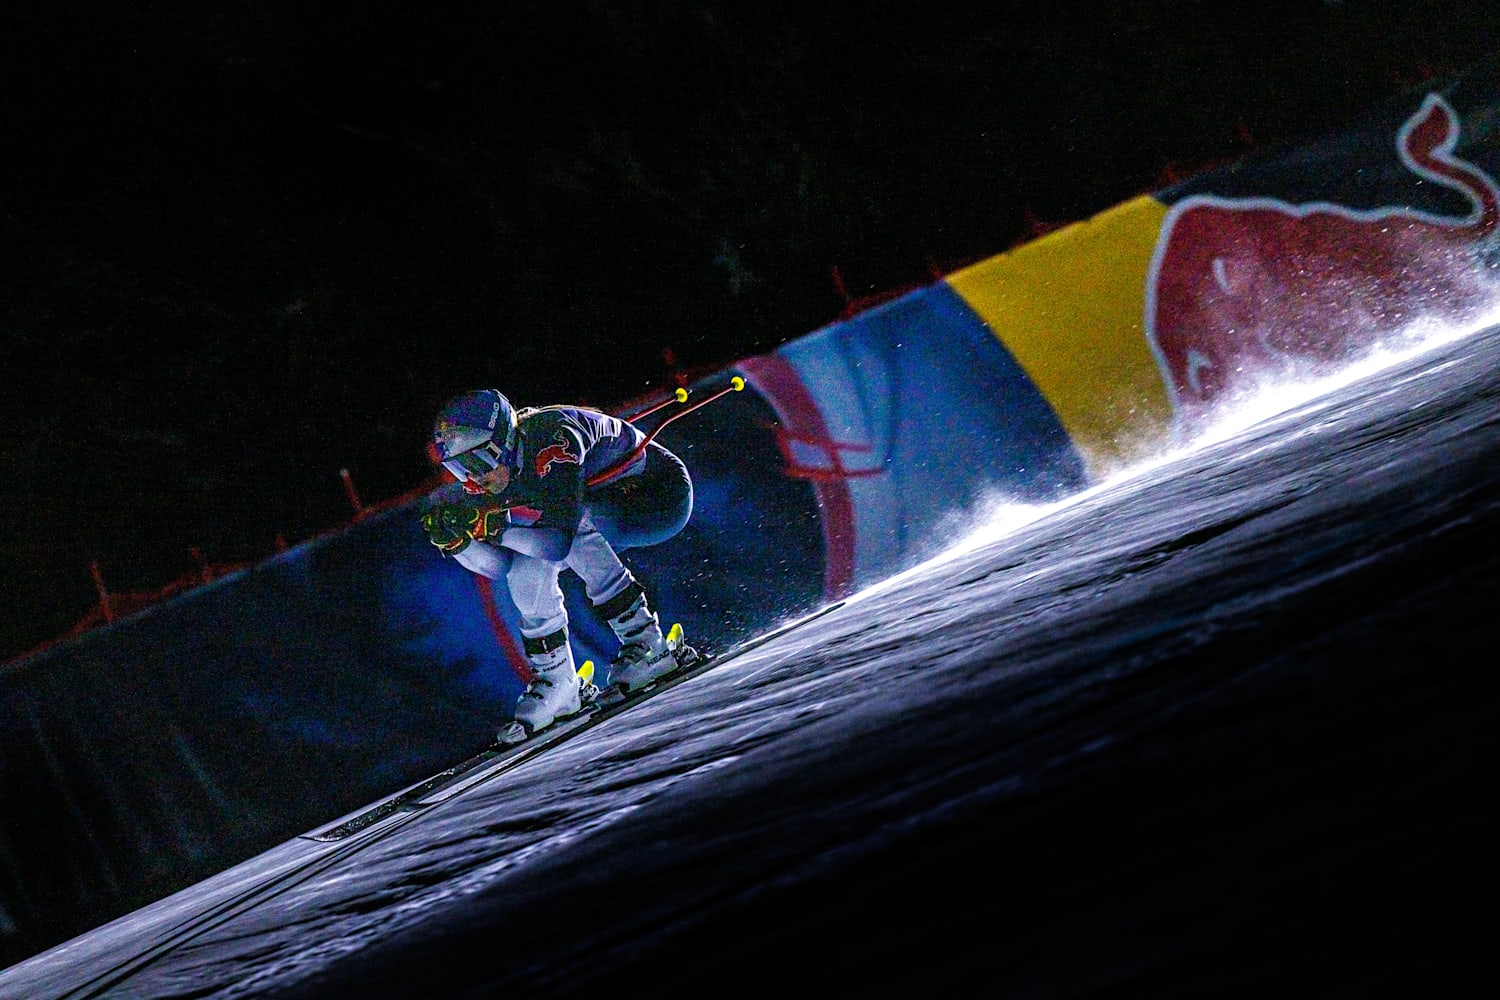 Casco Briko Vulcano Fis 6.8 Red Bull Lindsey Vonn Us Ski Team